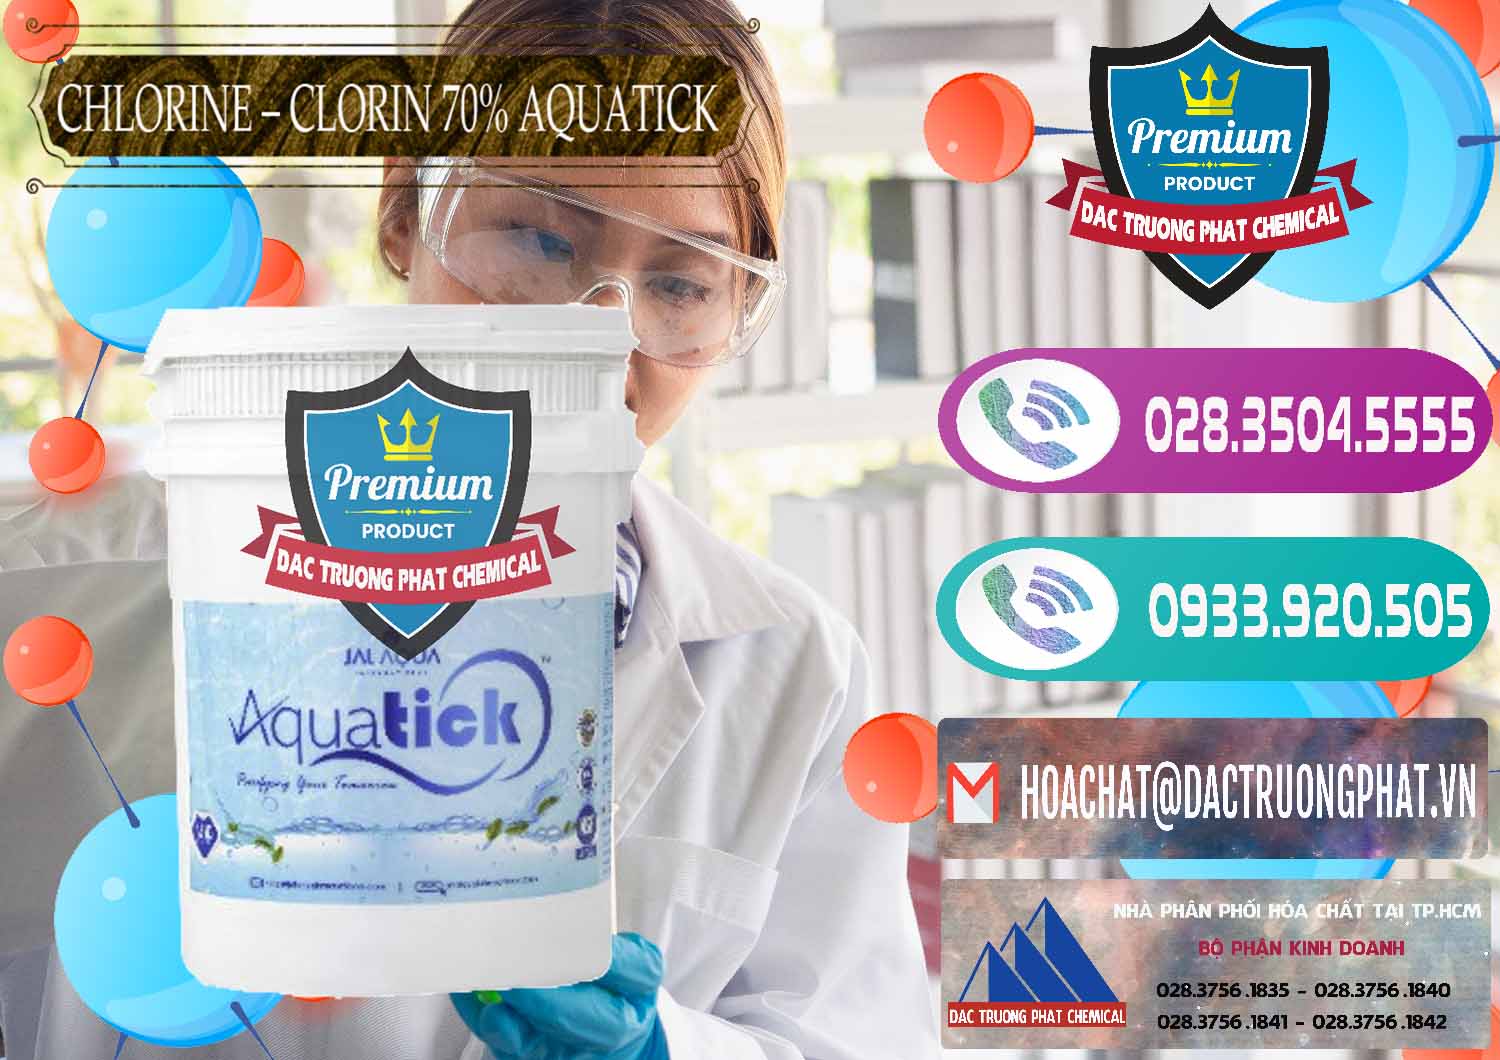 Đơn vị chuyên cung ứng và bán Chlorine – Clorin 70% Aquatick Thùng Cao Jal Aqua Ấn Độ India - 0237 - Cty chuyên phân phối và nhập khẩu hóa chất tại TP.HCM - hoachatxulynuoc.com